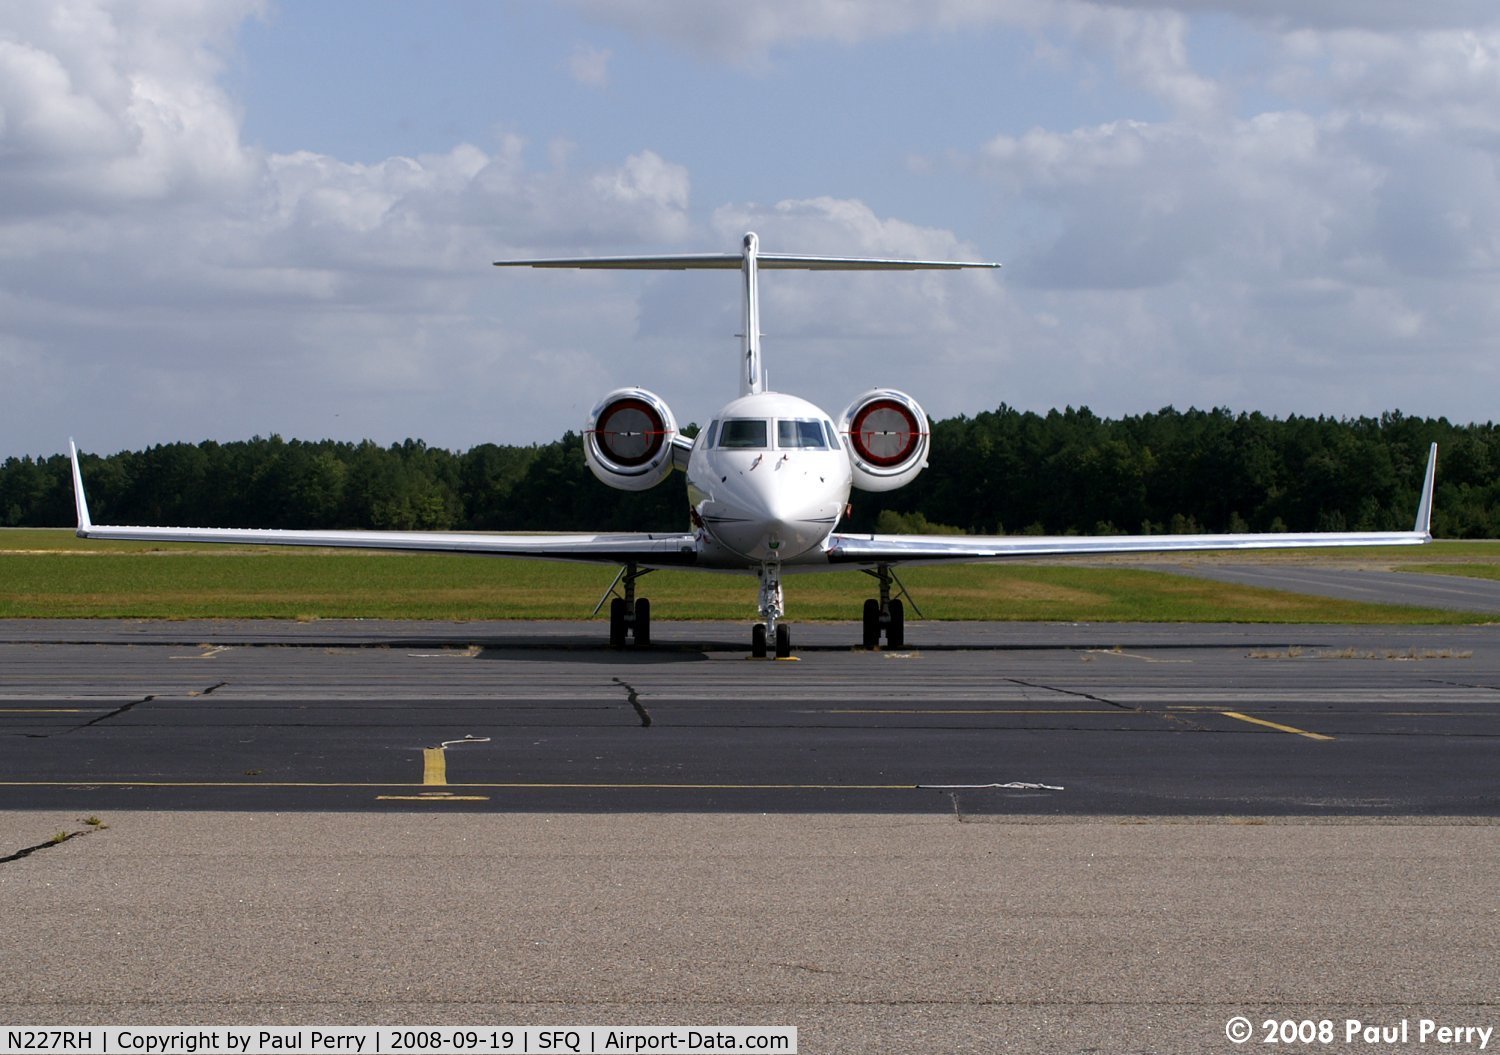 N227RH, 2007 Gulfstream Aerospace GIV-X (G450) C/N 4108, Quite a fetching head on view